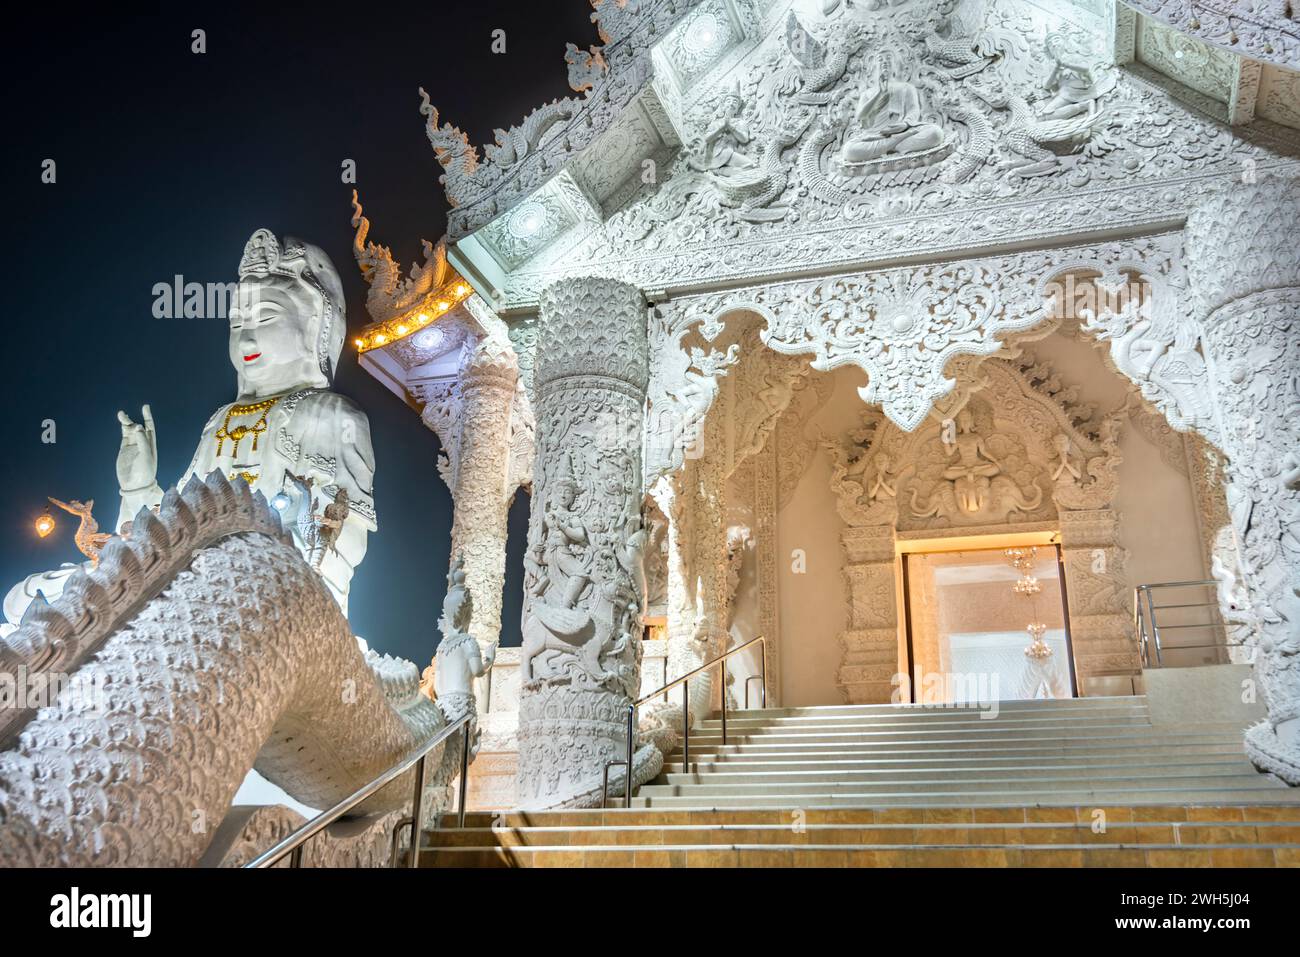 In der Abenddämmerung beleuchtet, ist die Architektur herrlich mit der Mischung aus chinesischer Guan Yin Statue, Drachentreppen, weißem MarmorBuddha und Thaj-Architektur.B Stockfoto